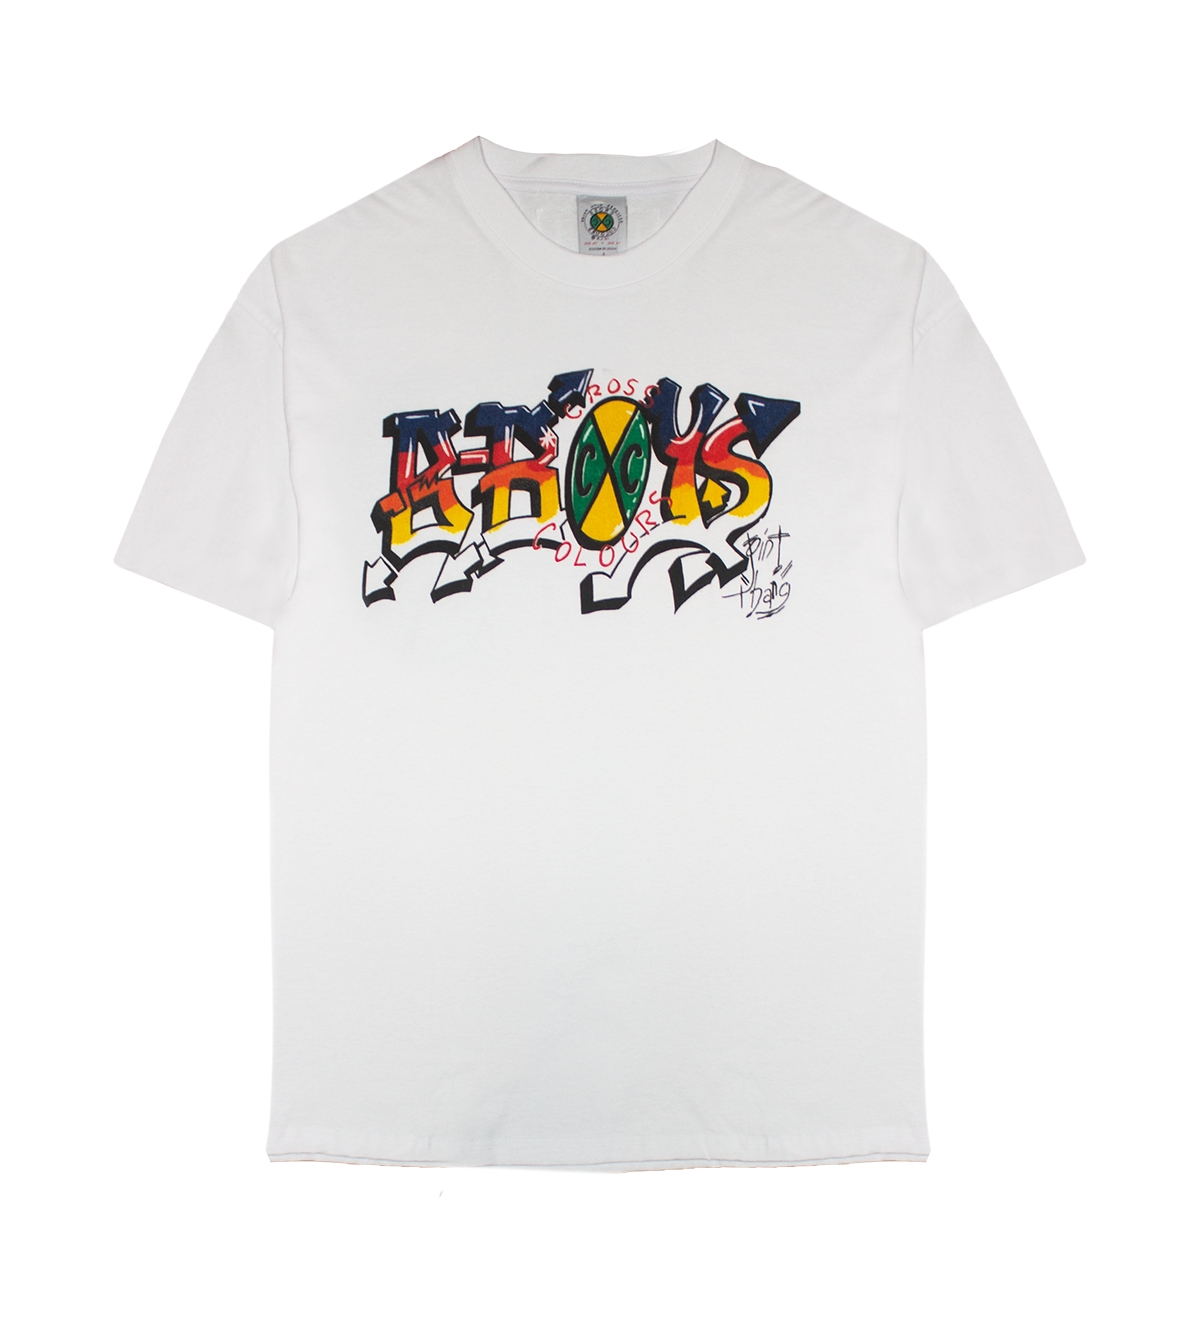 Bboyz T-Shirt - White